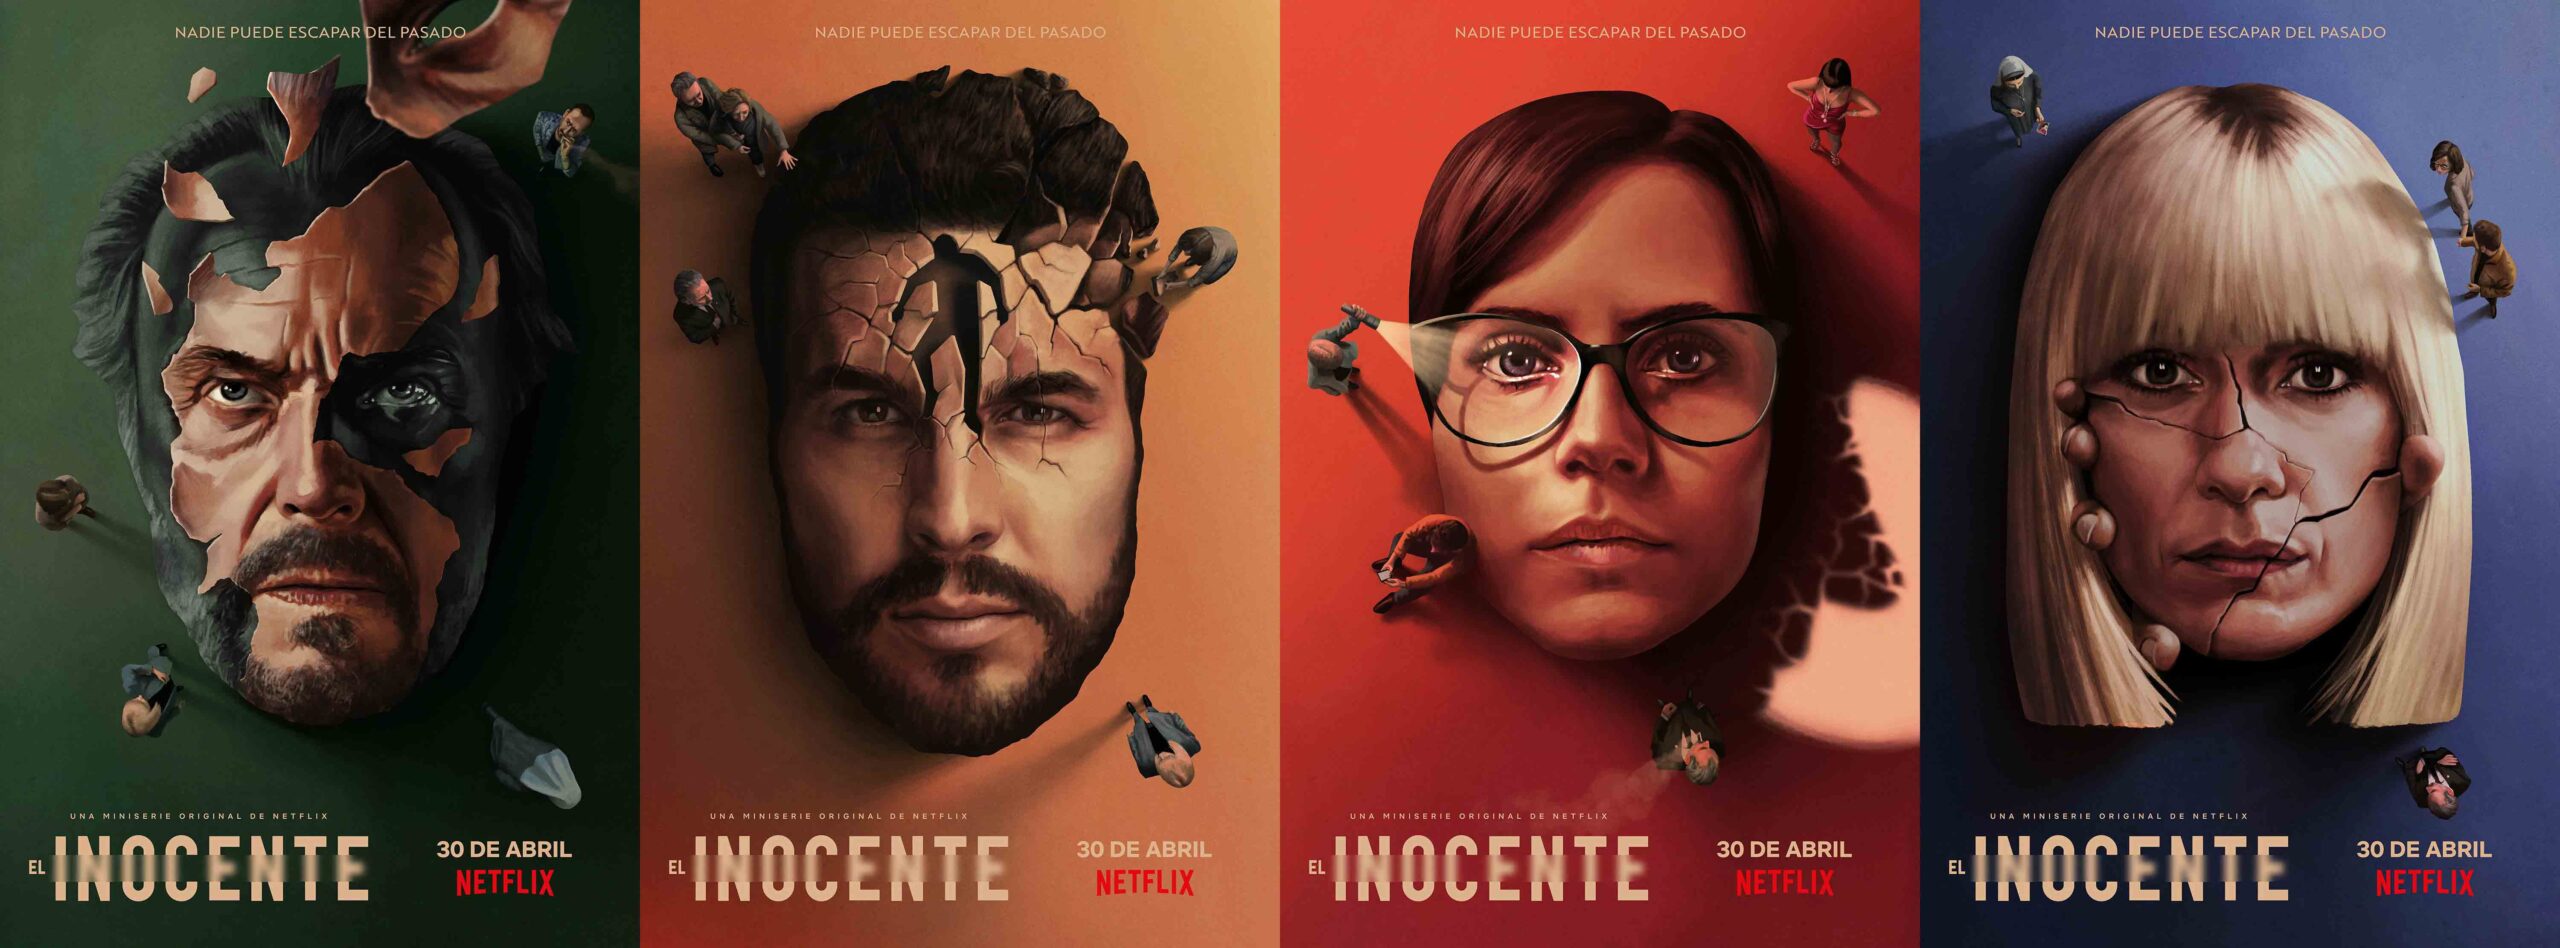 Netflix publica las primeras imágenes de ‘El inocente’